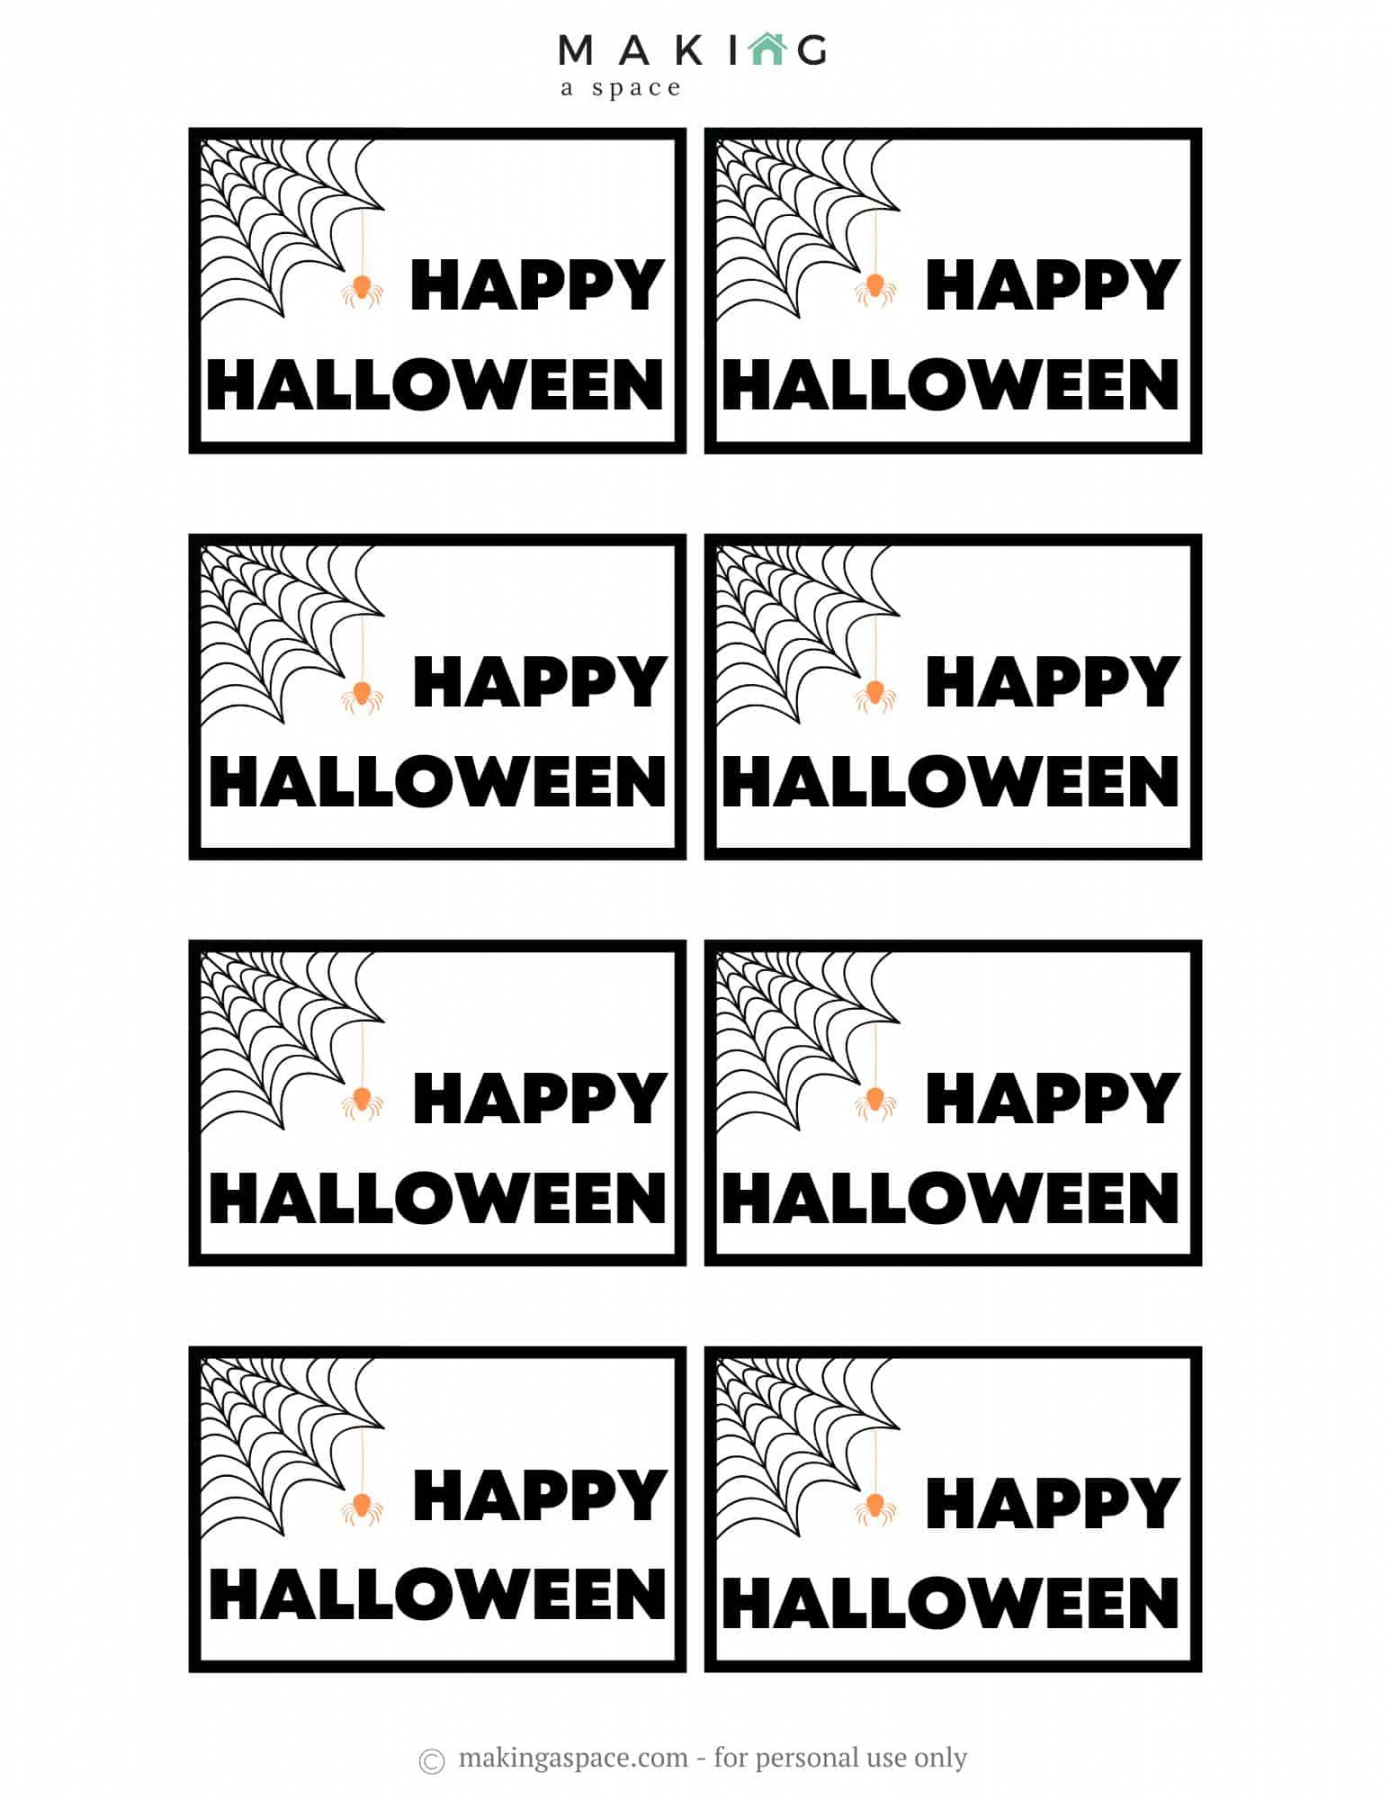 Free Printable Halloween Gift Tags - Printable - Free Printable Halloween Gift Tags - Making A Space